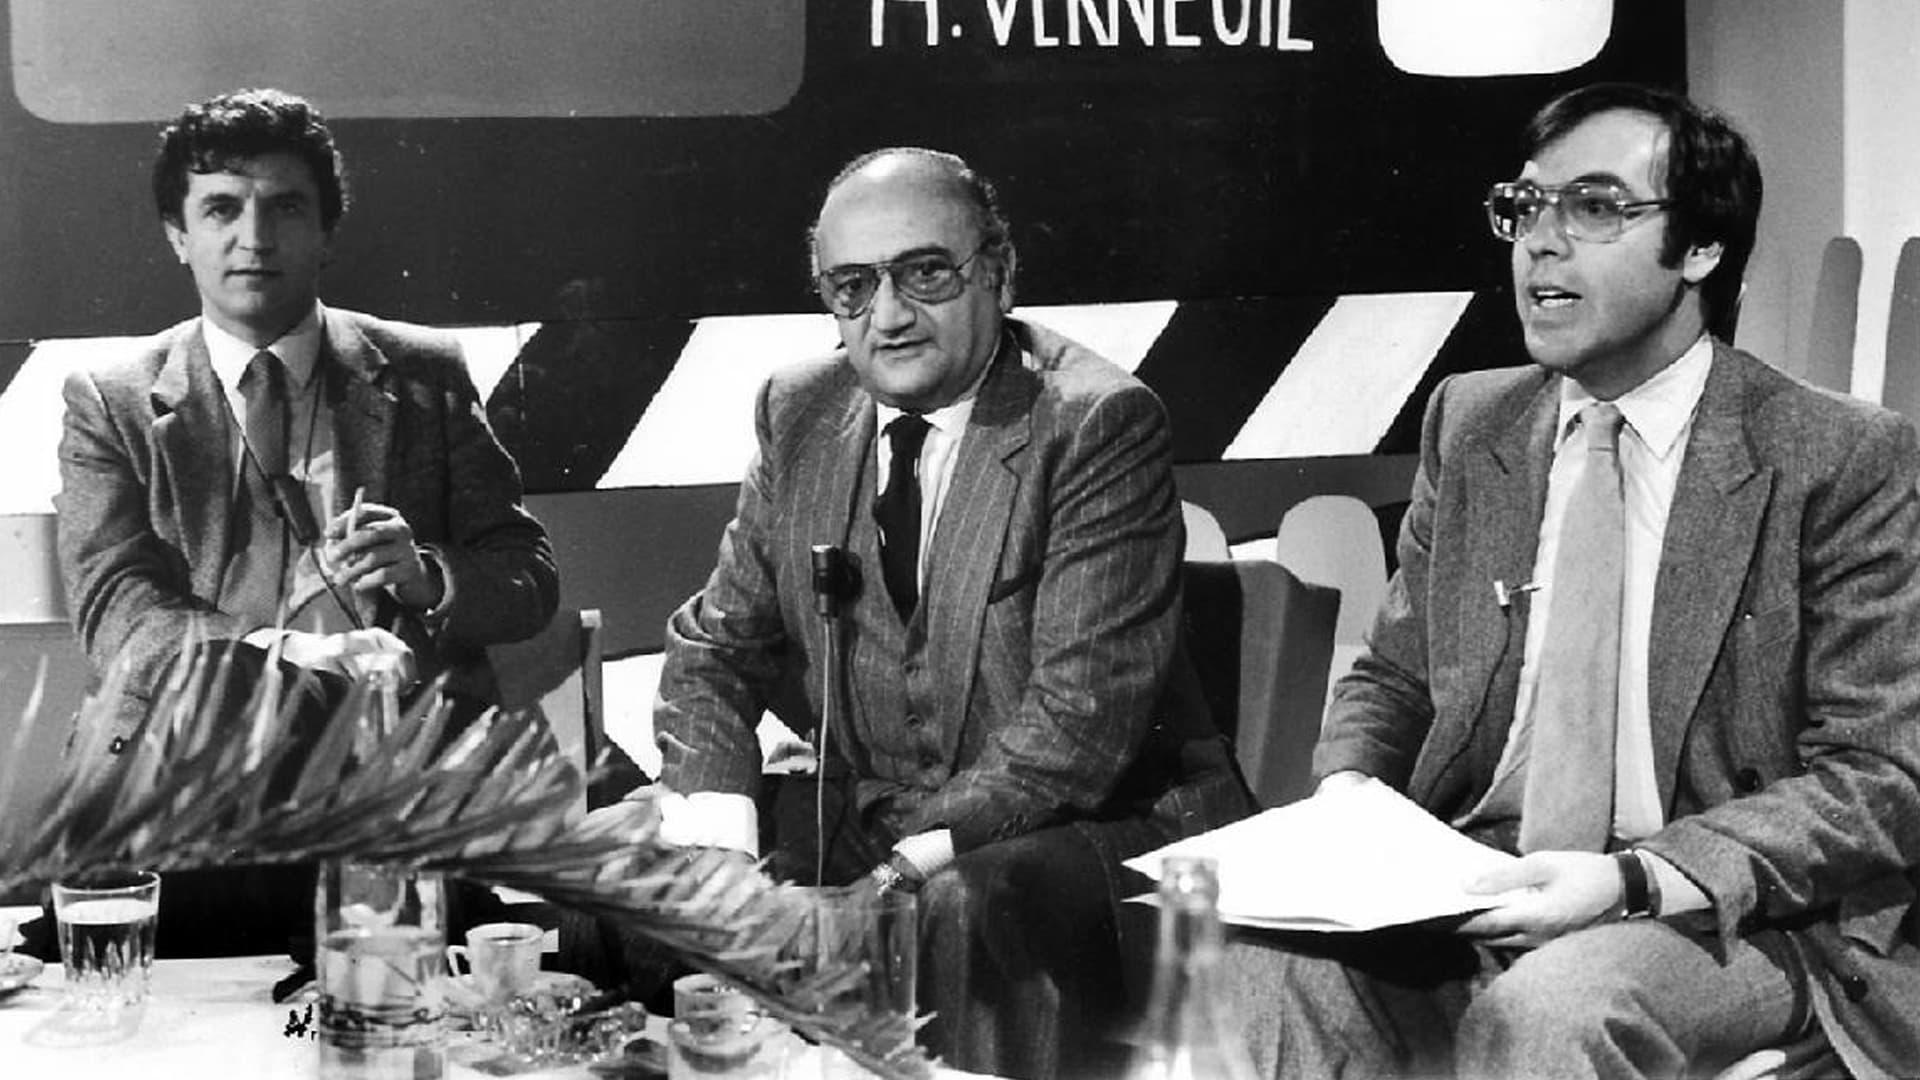 Télé Ciné Club backdrop